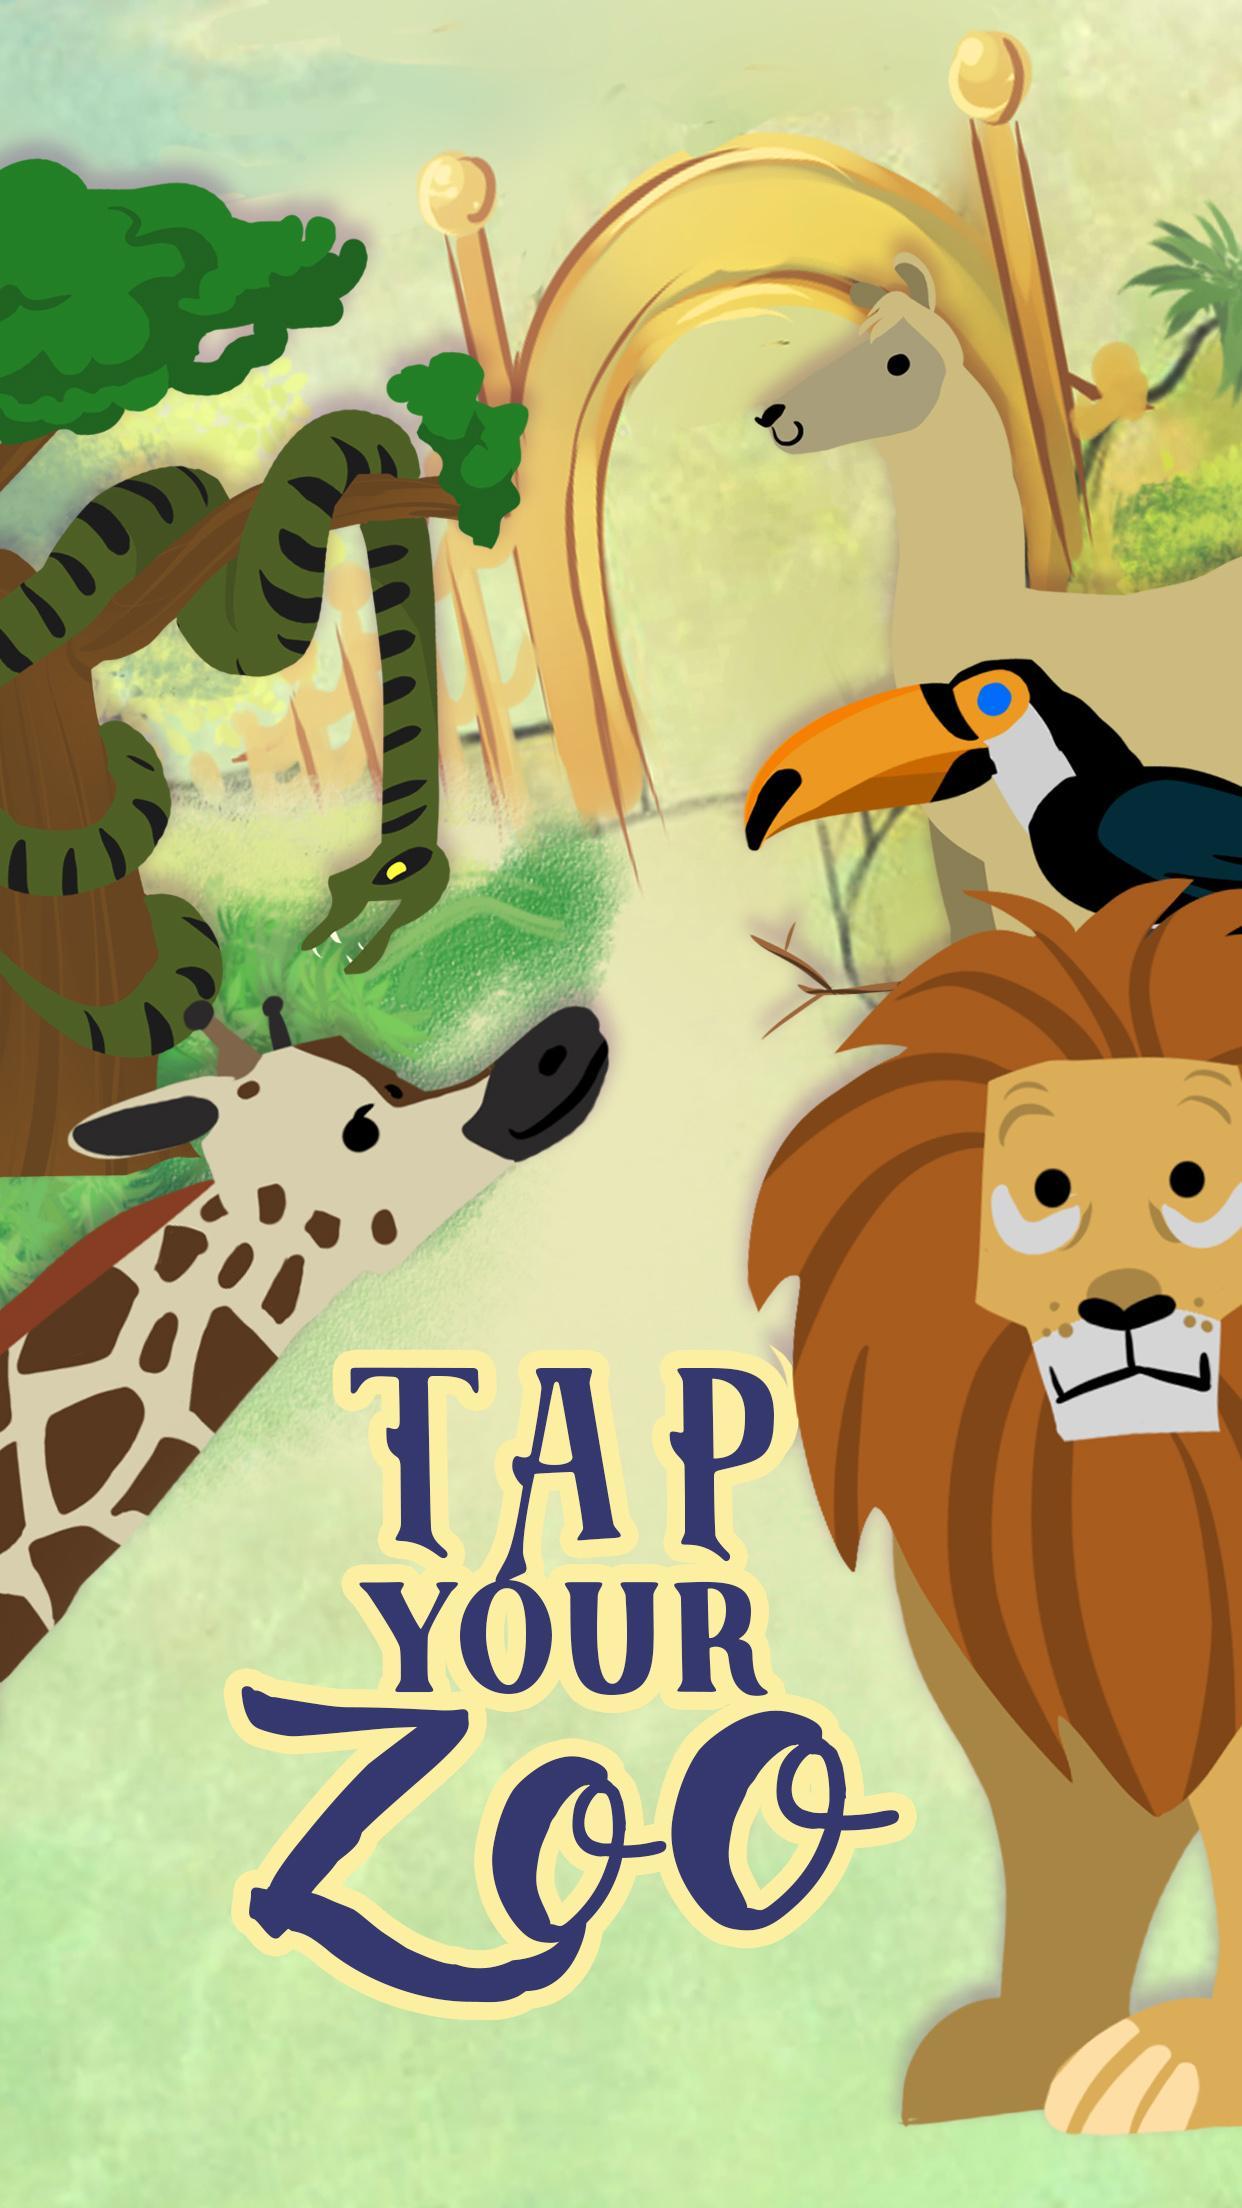 Screenshot 1 of Tap Your Zoo - простой кликер 1.0.2